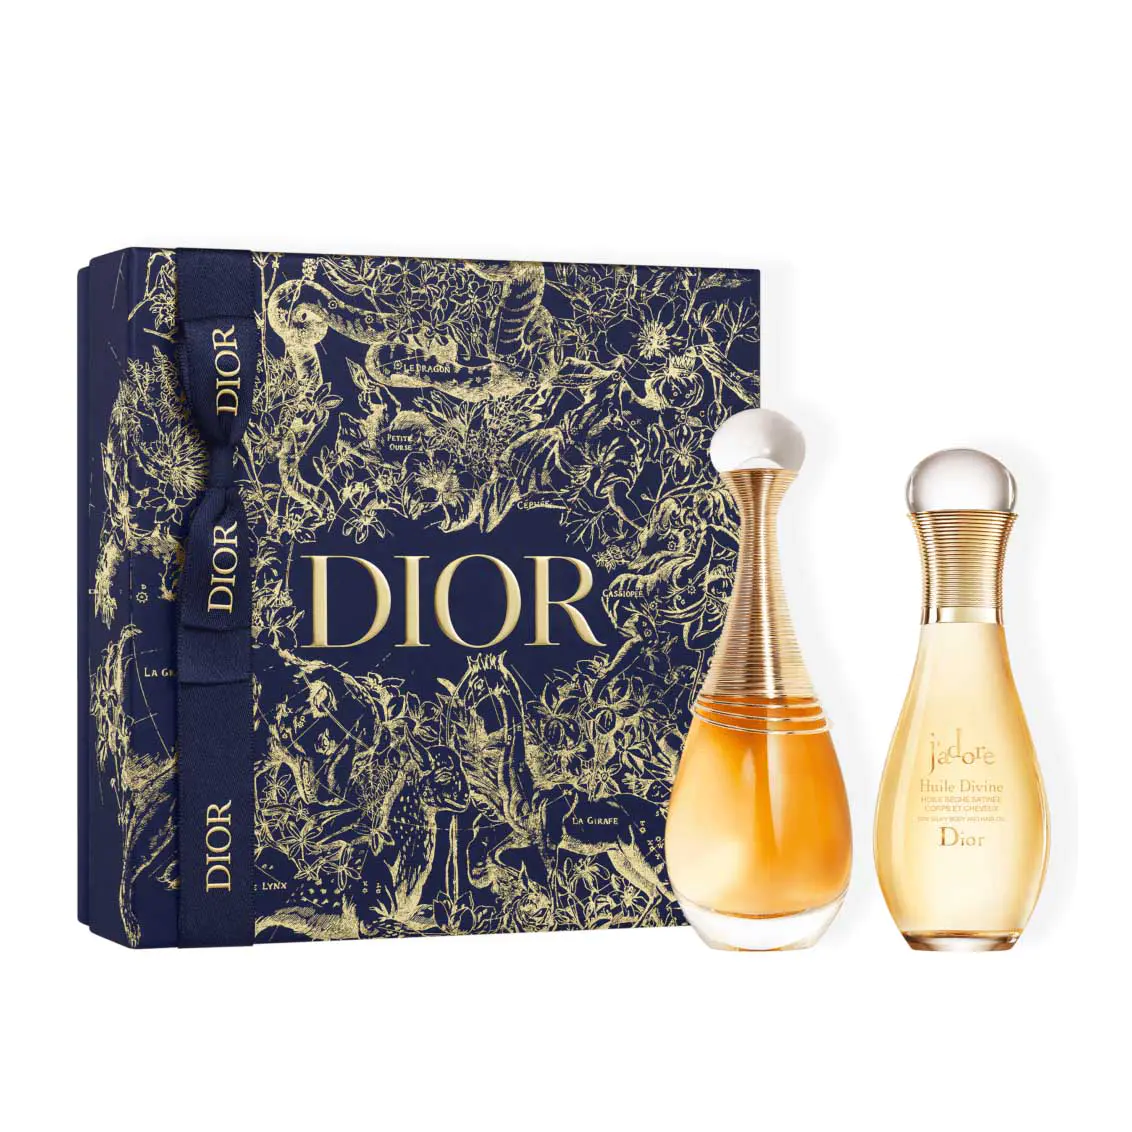 Gift Sets by Dior Fragrance Makeup  Skincare Sets  DIOR US